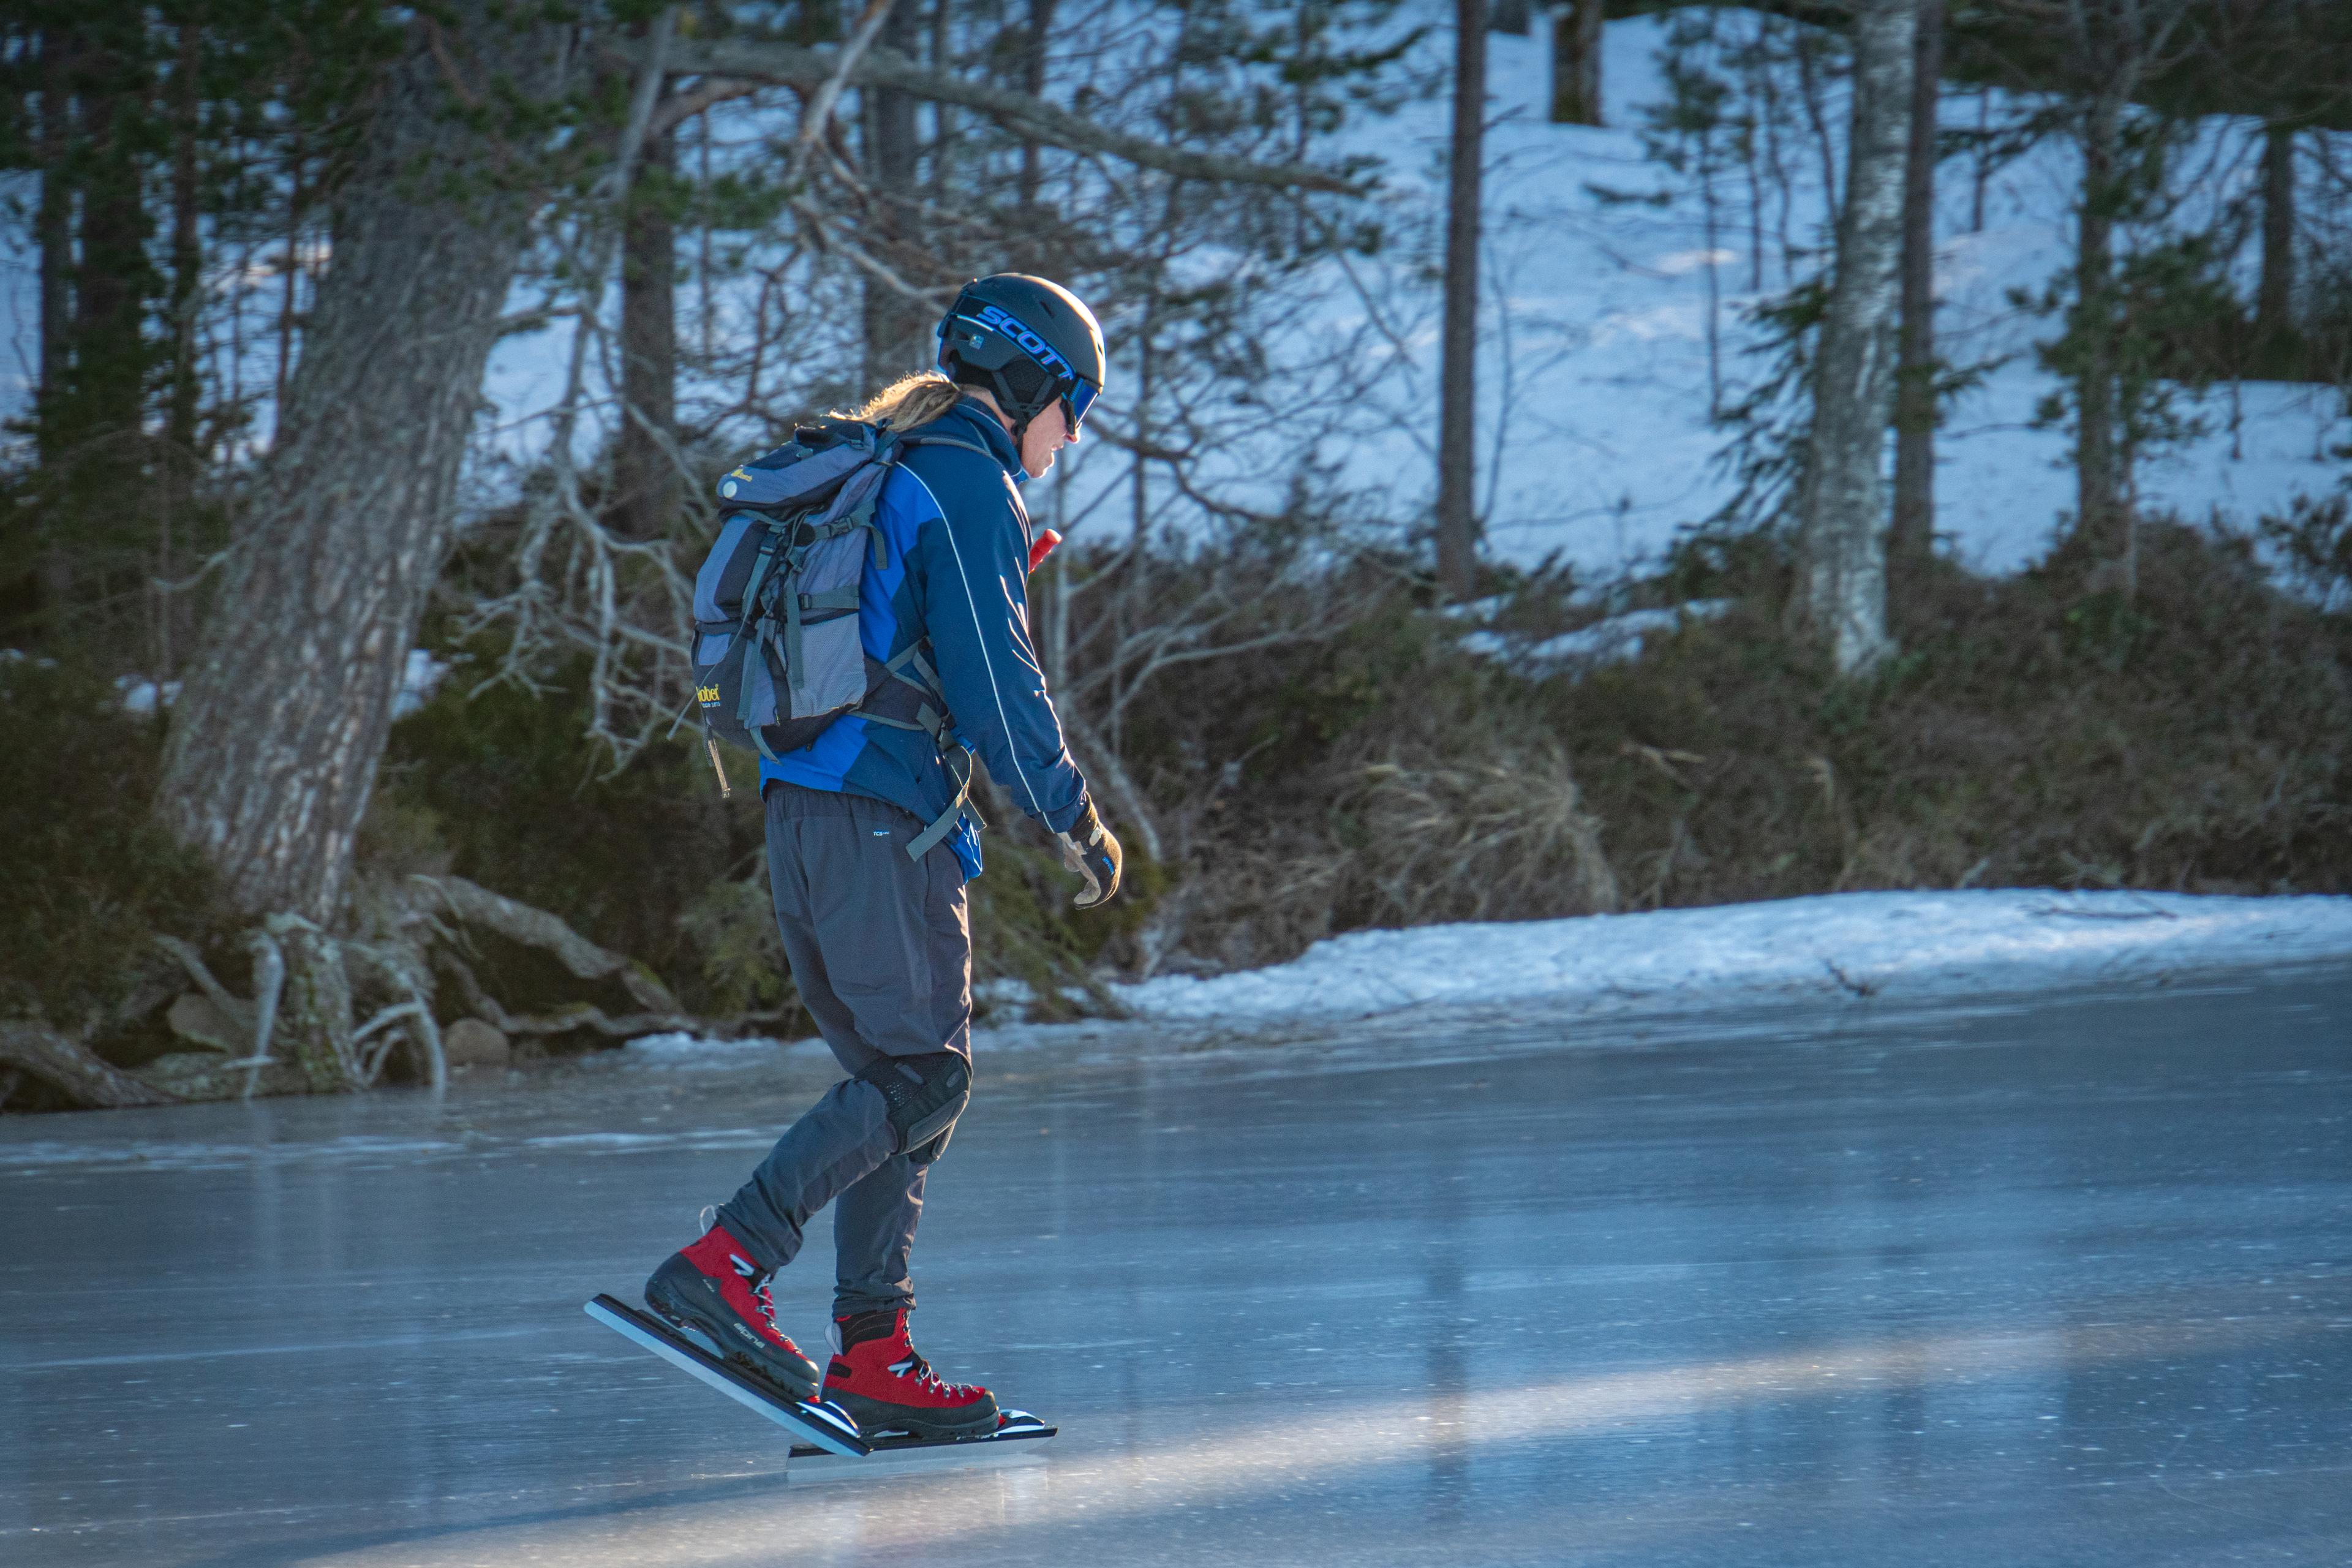 Eislauf-Tourführer Mikael Nilsson beim Eislaufen auf einem zugefrorenen See mit perfekten Eisbedingungen.